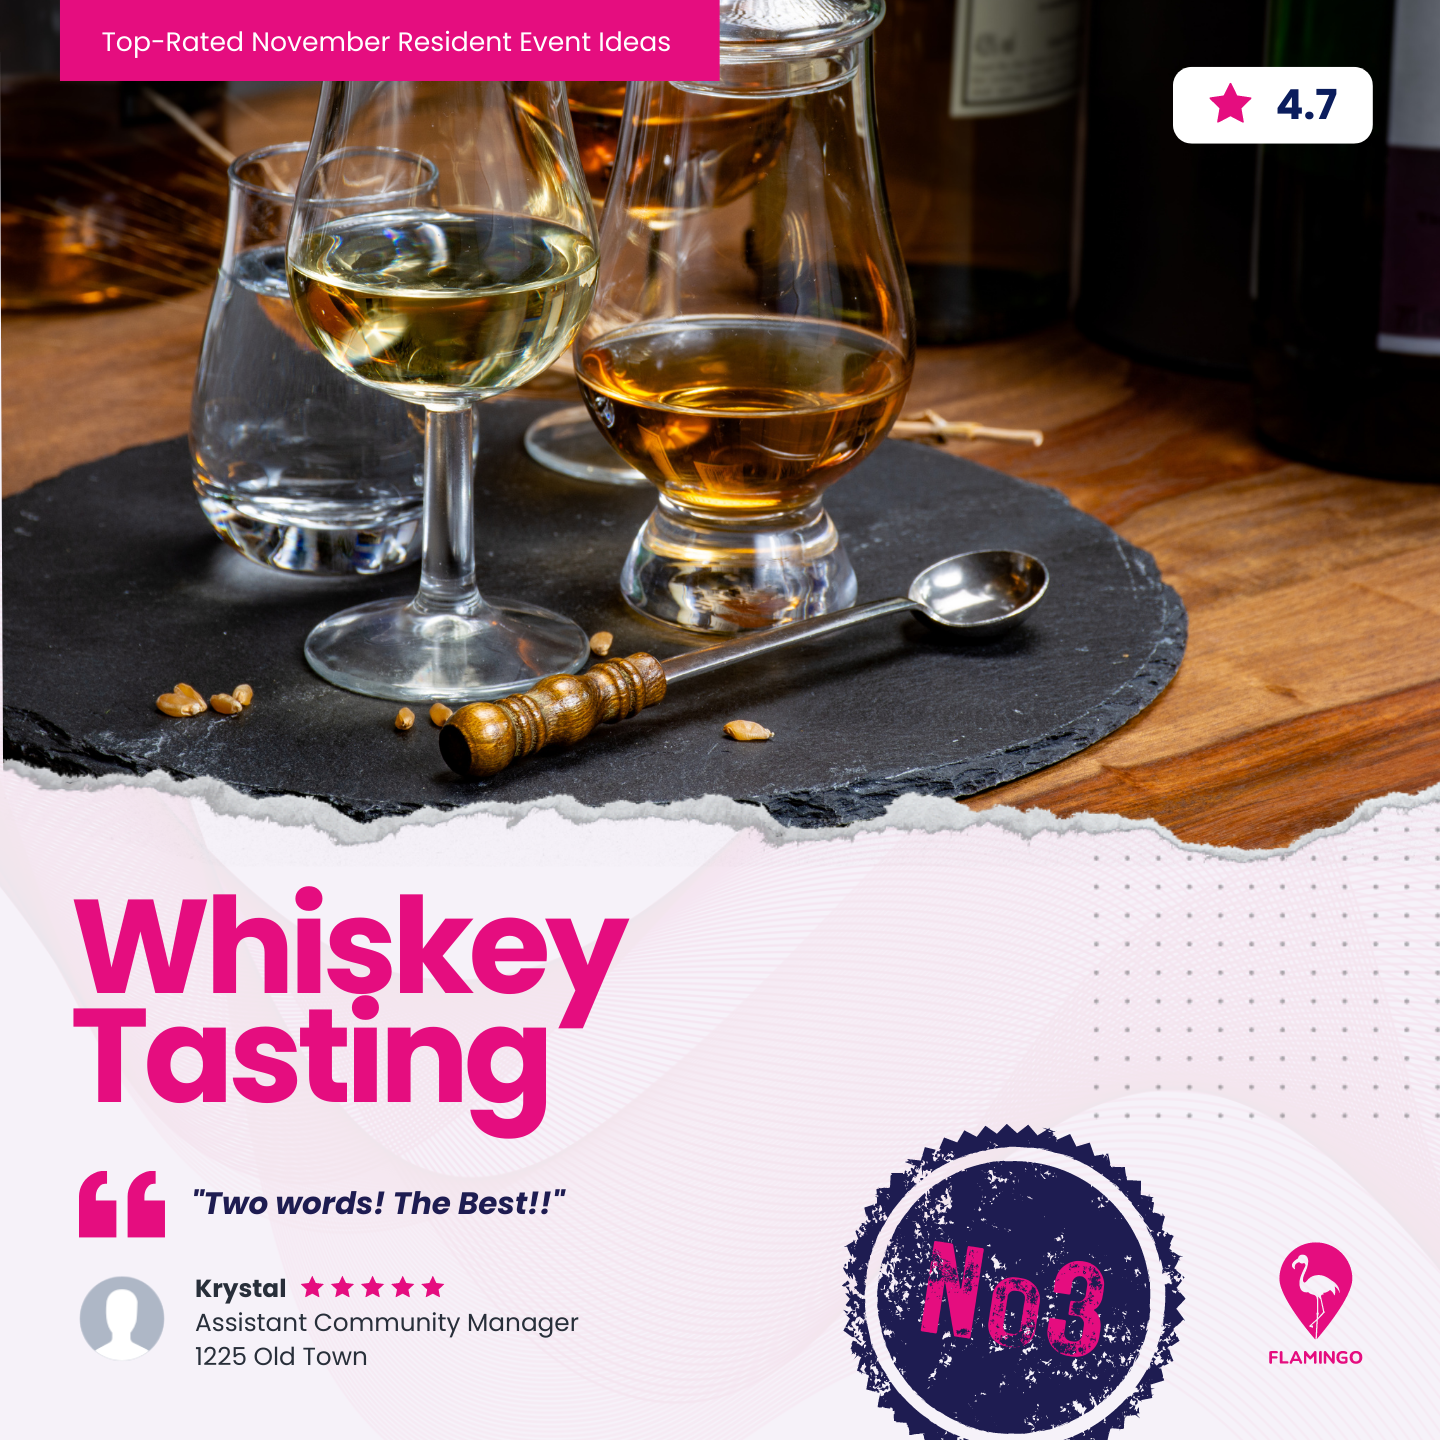 Whiskey Tasting | November Resident Event Ideas